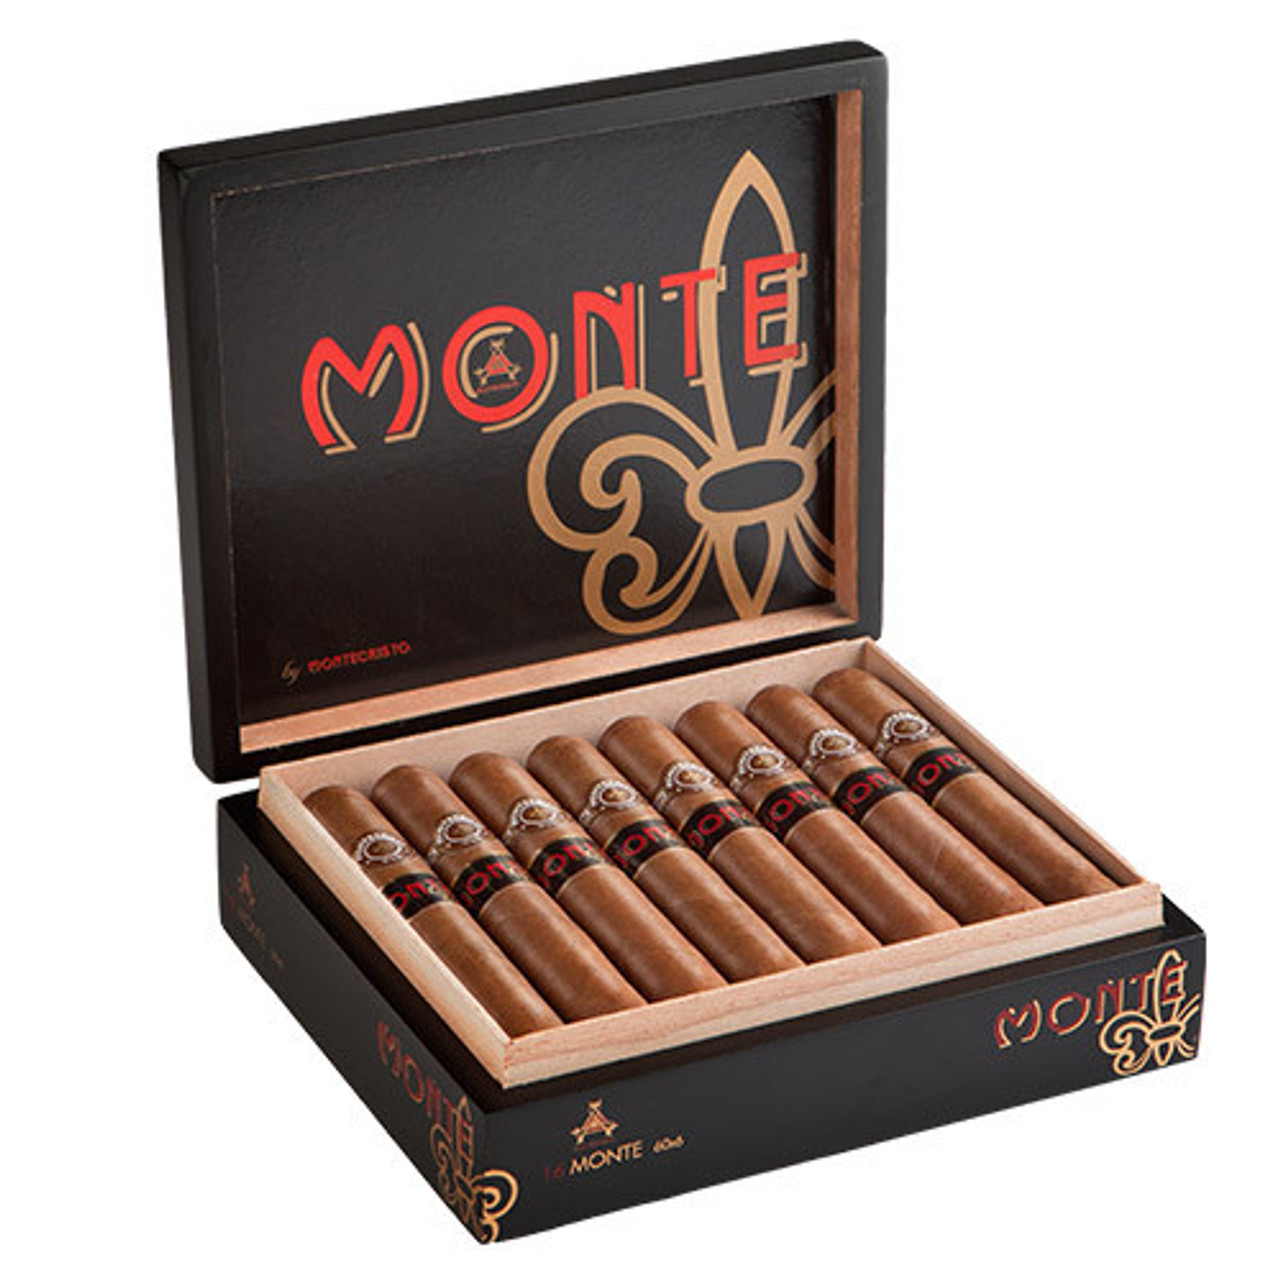 Monte by Montecristo Monte Cigars - 6 x 60 (Box of 16) *Box